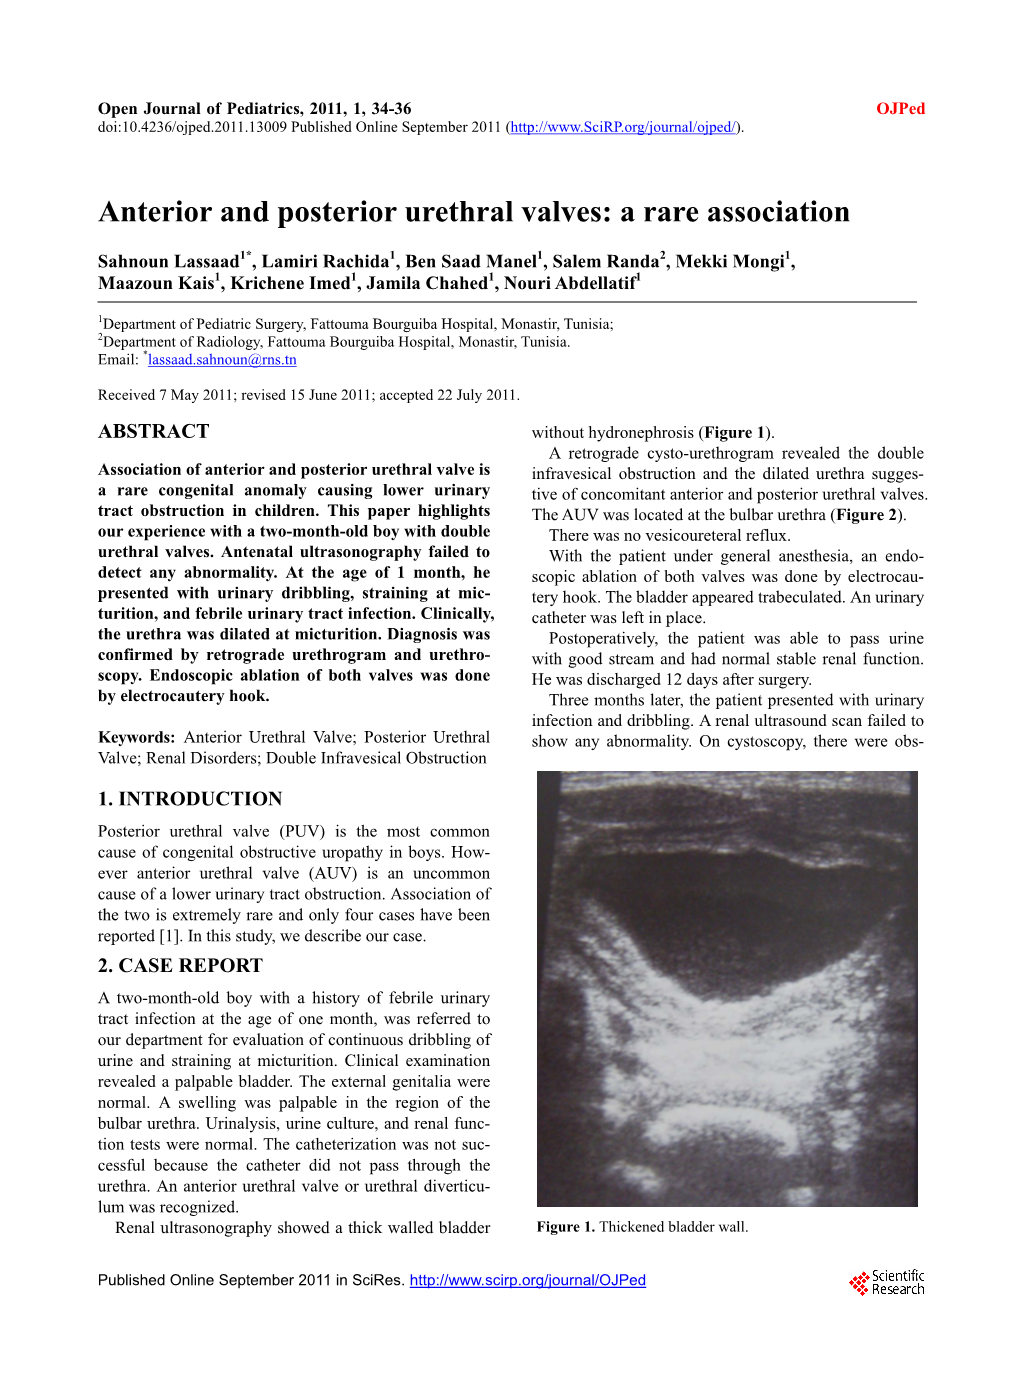 Anterior and Posterior Urethral Valves: a Rare Association